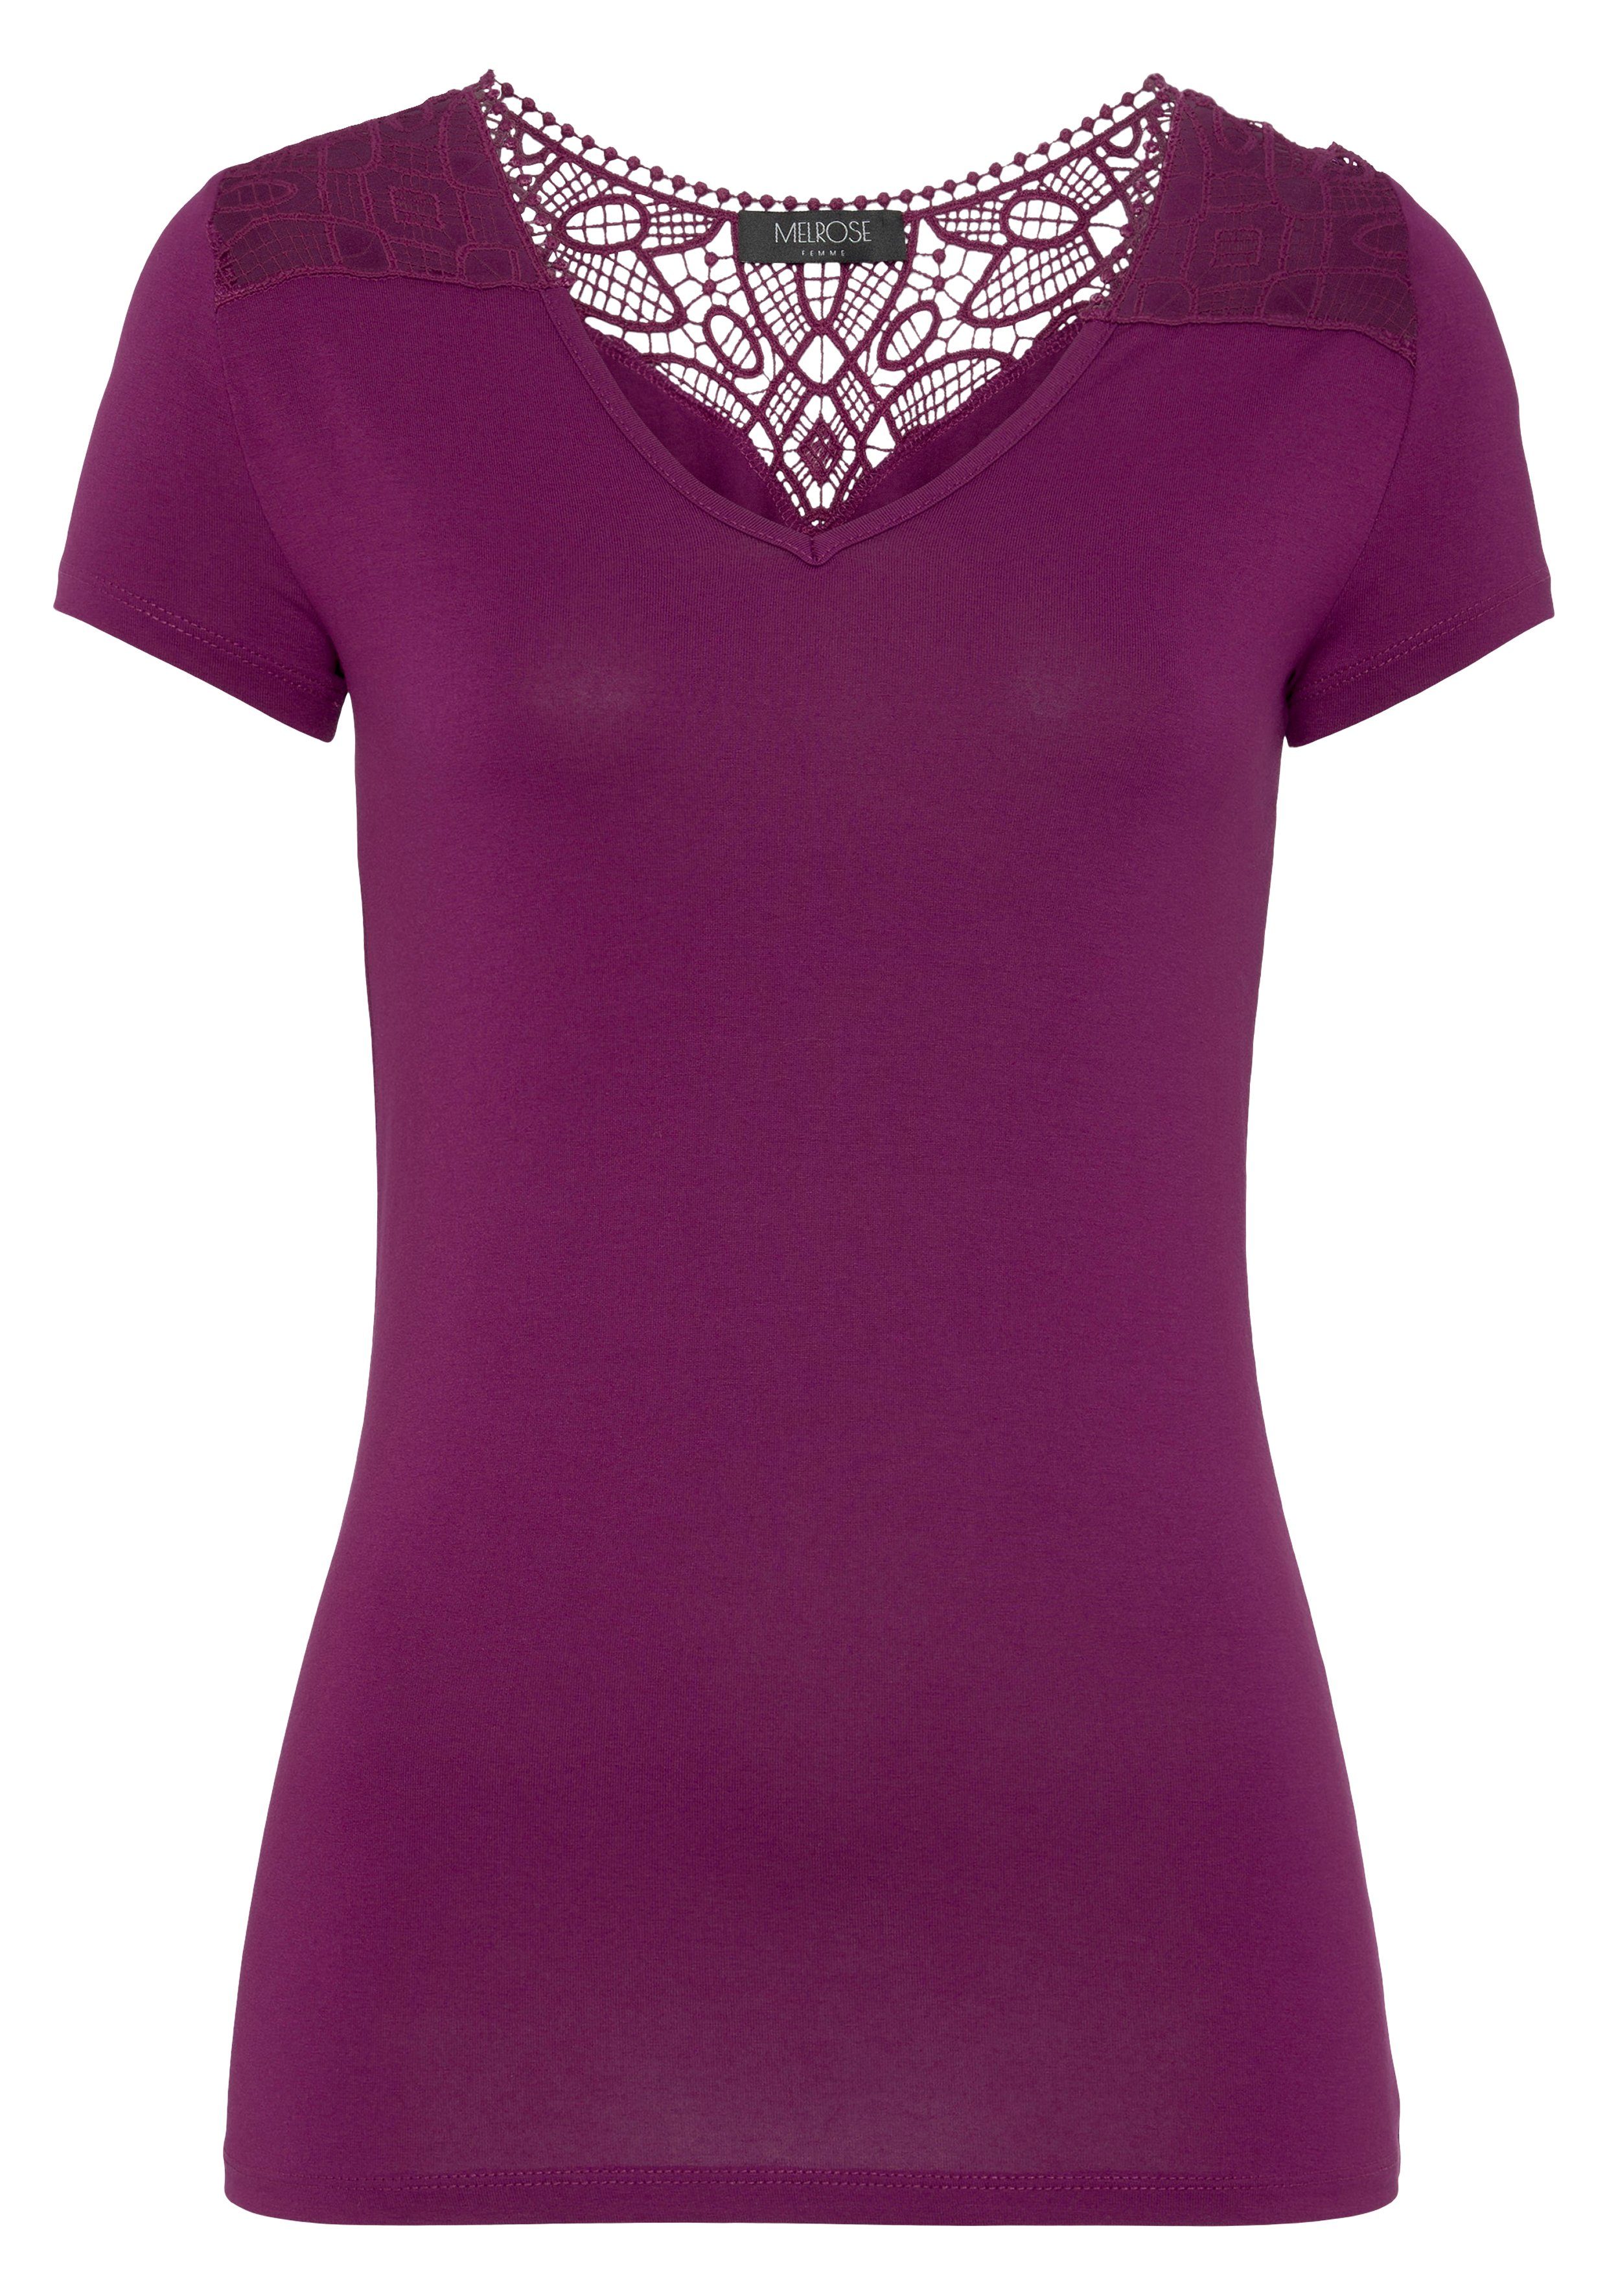 V-Ausschnitt T-Shirt lila mit Melrose